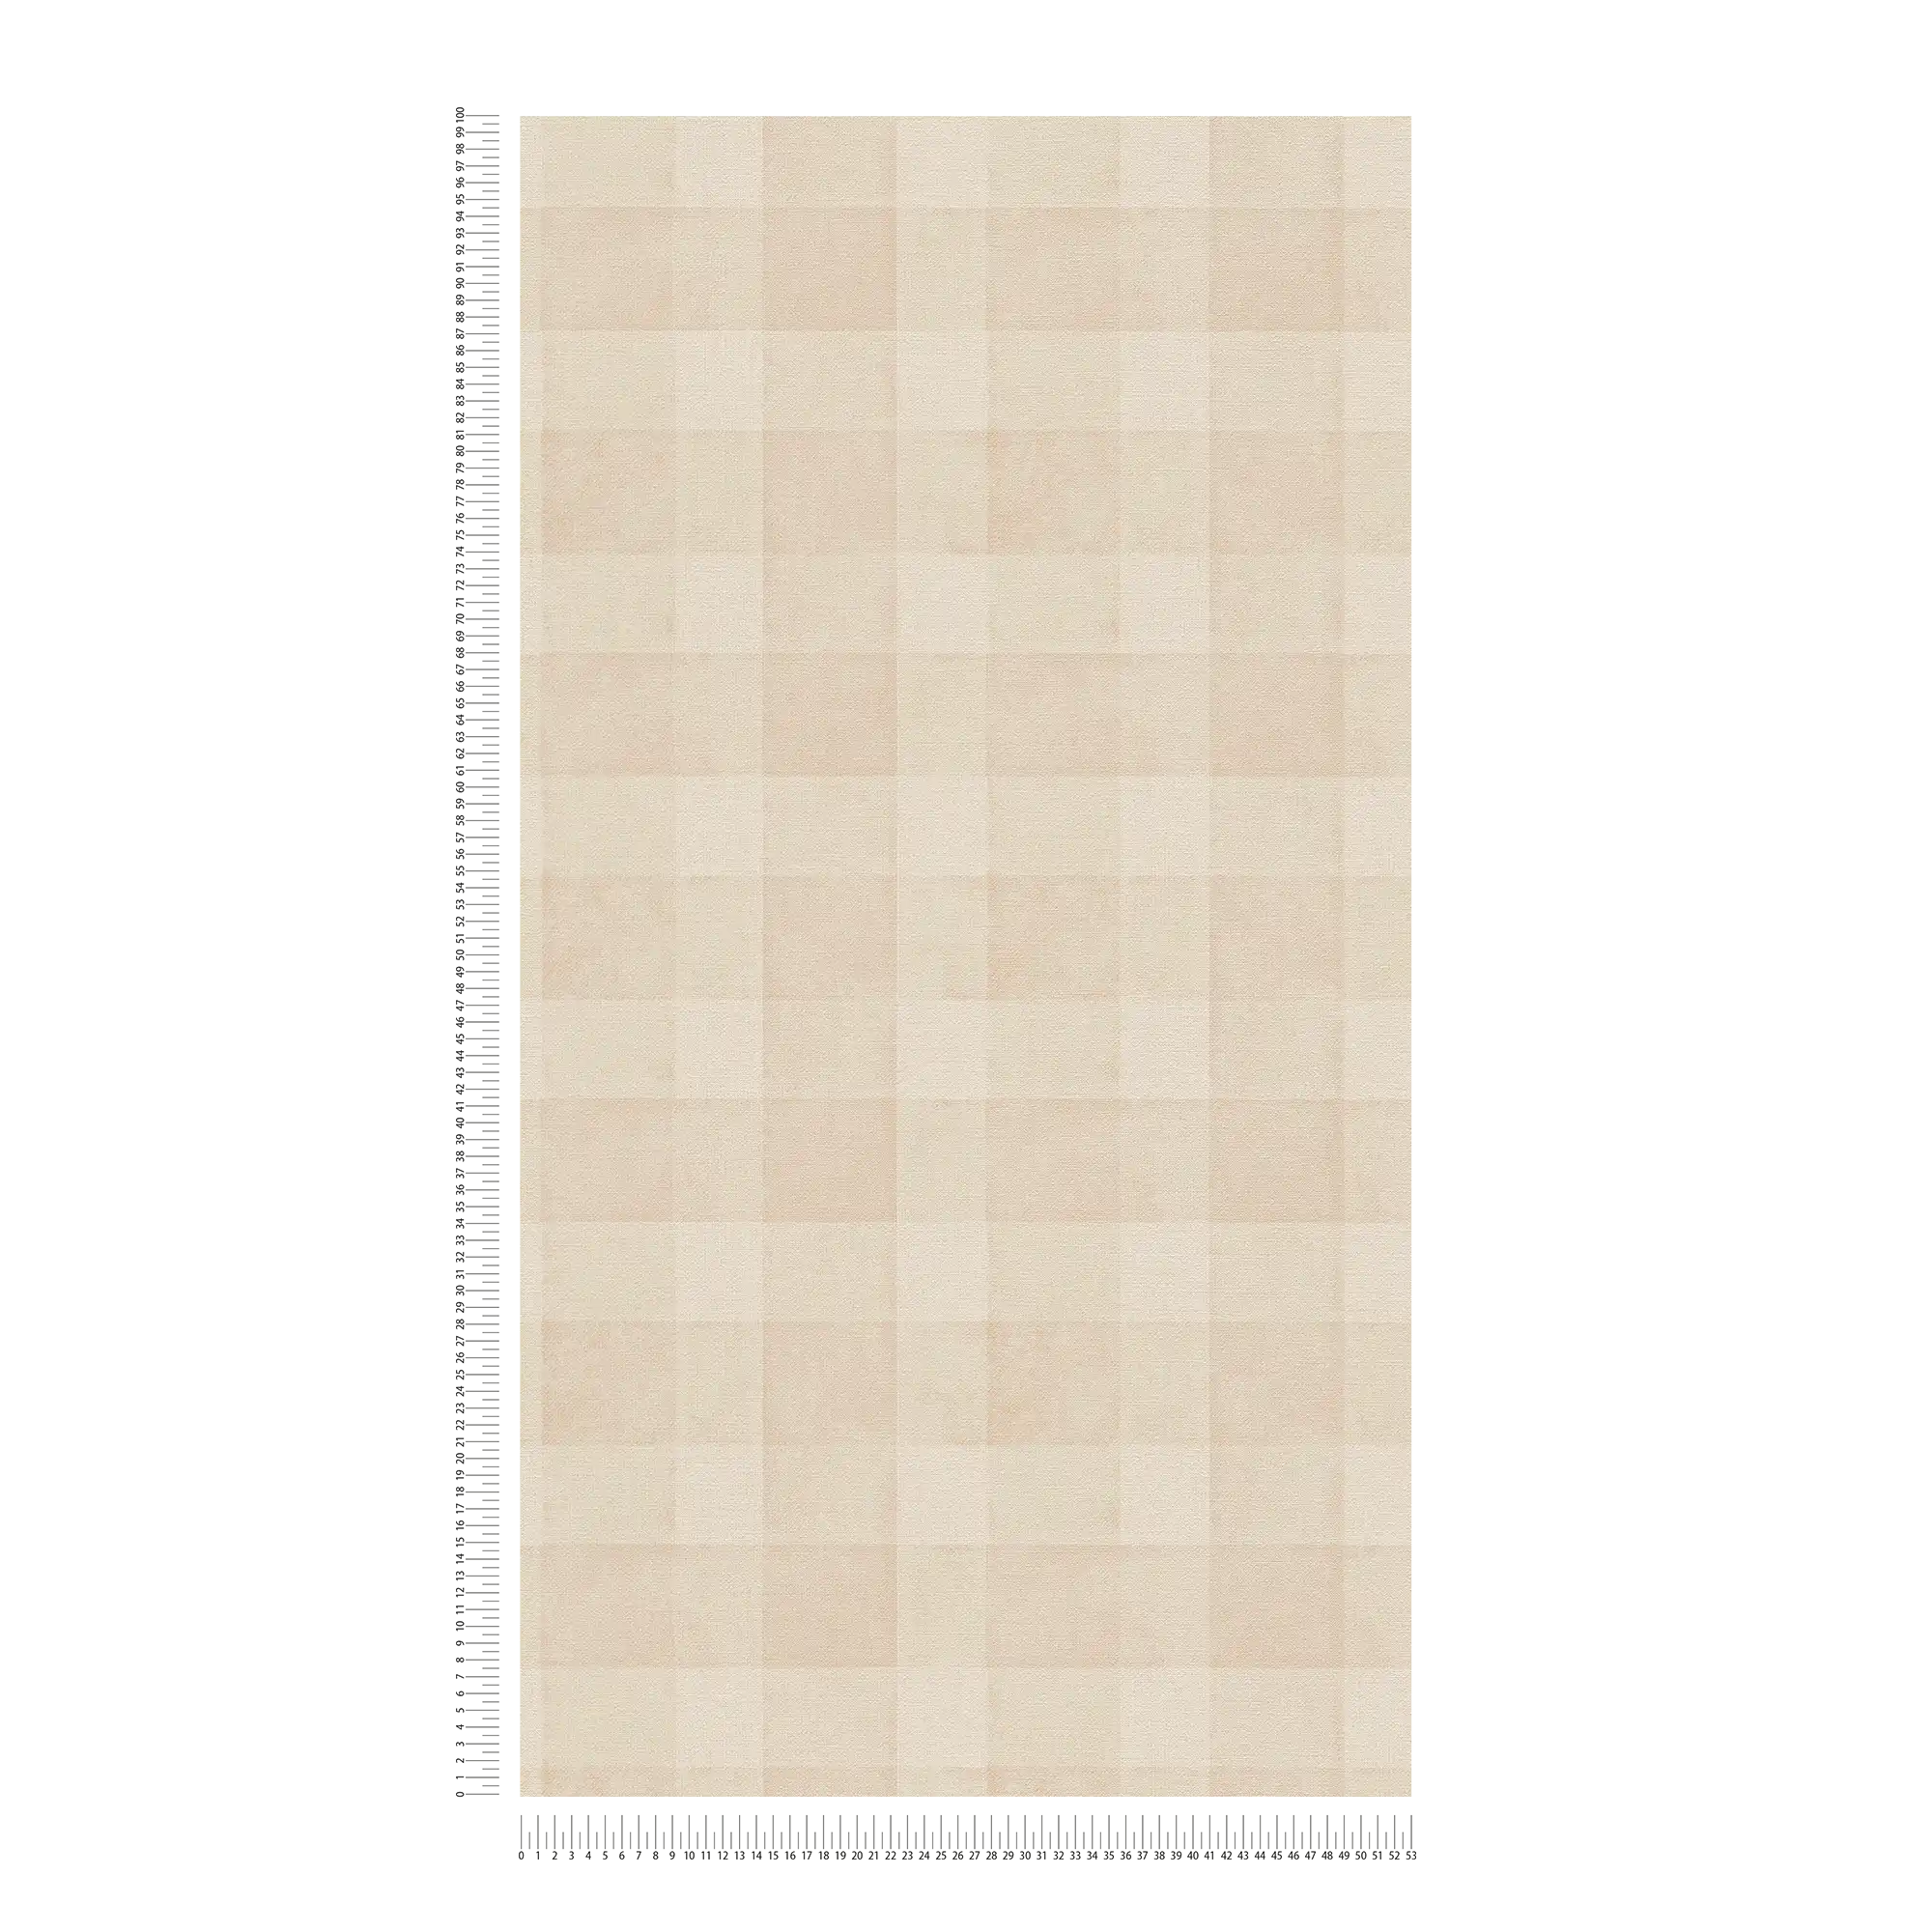             Carta da parati in tessuto non tessuto senza PVC con motivo a quadri e aspetto lino - beige
        